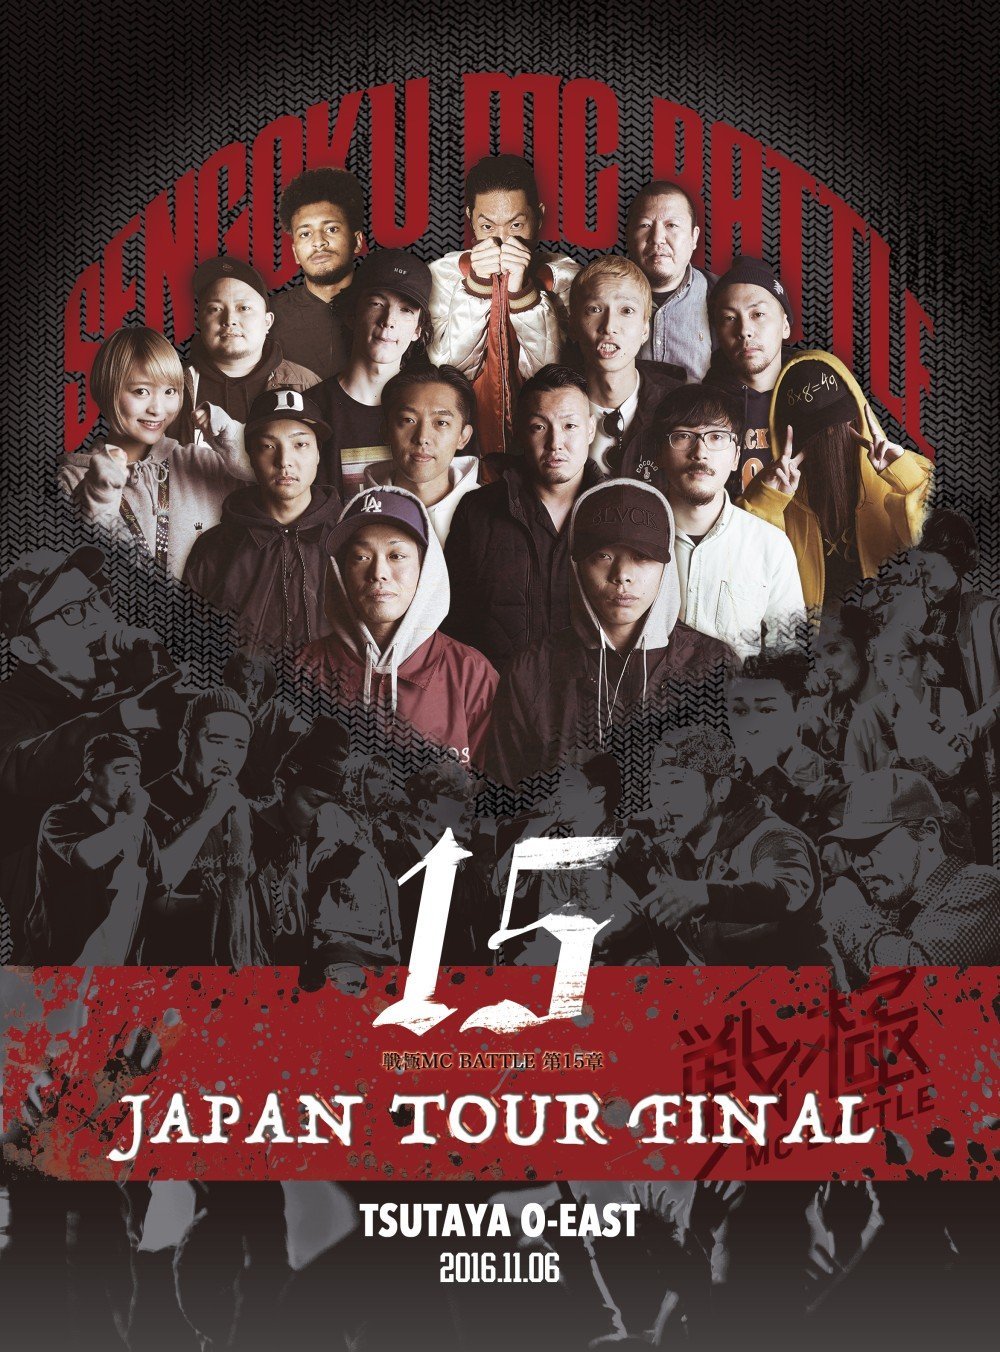 戦極MCBATTLE第15章 本選 JAPAN TOUR FINAL 2016.11.06 完全収録DVD販売中！_e0246863_17564384.jpg